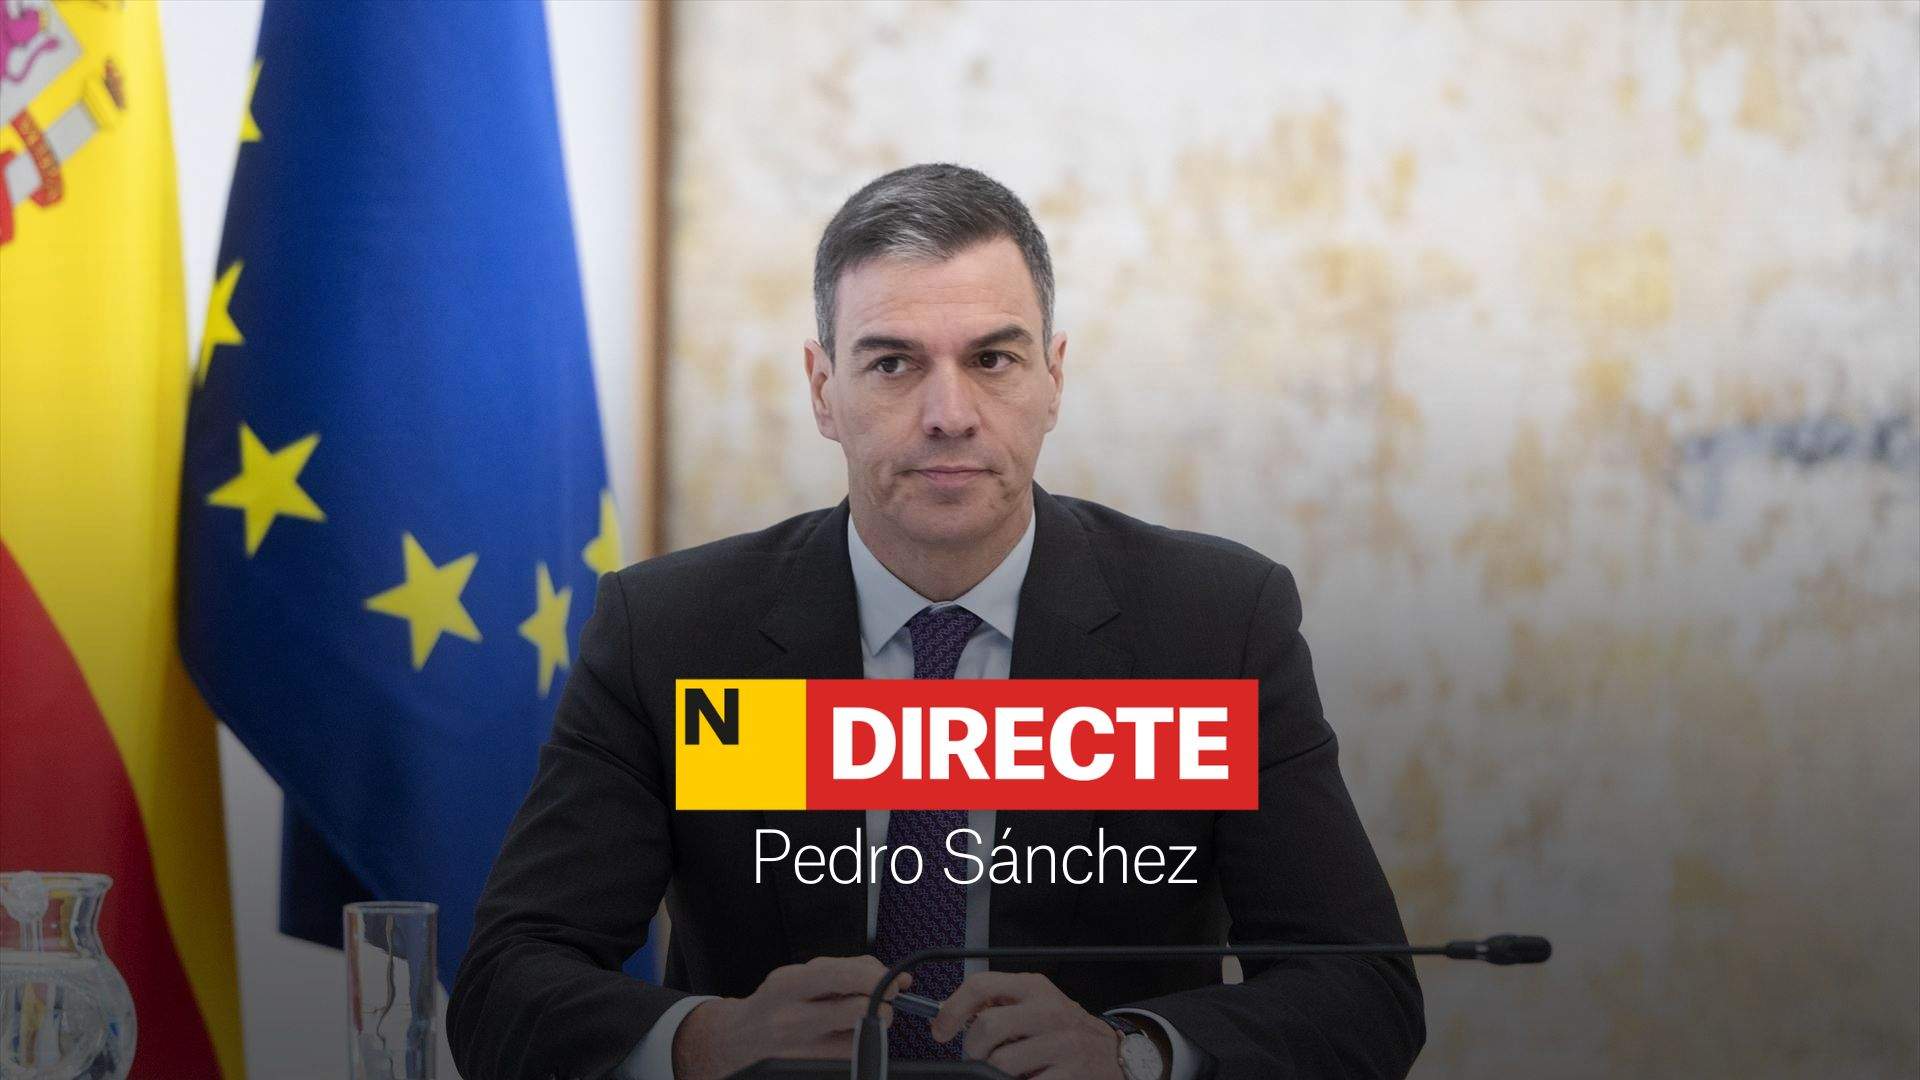 Pedro Sánchez, DIRECTE | Possible dimissió i reaccions a la carta del president del govern espanyol